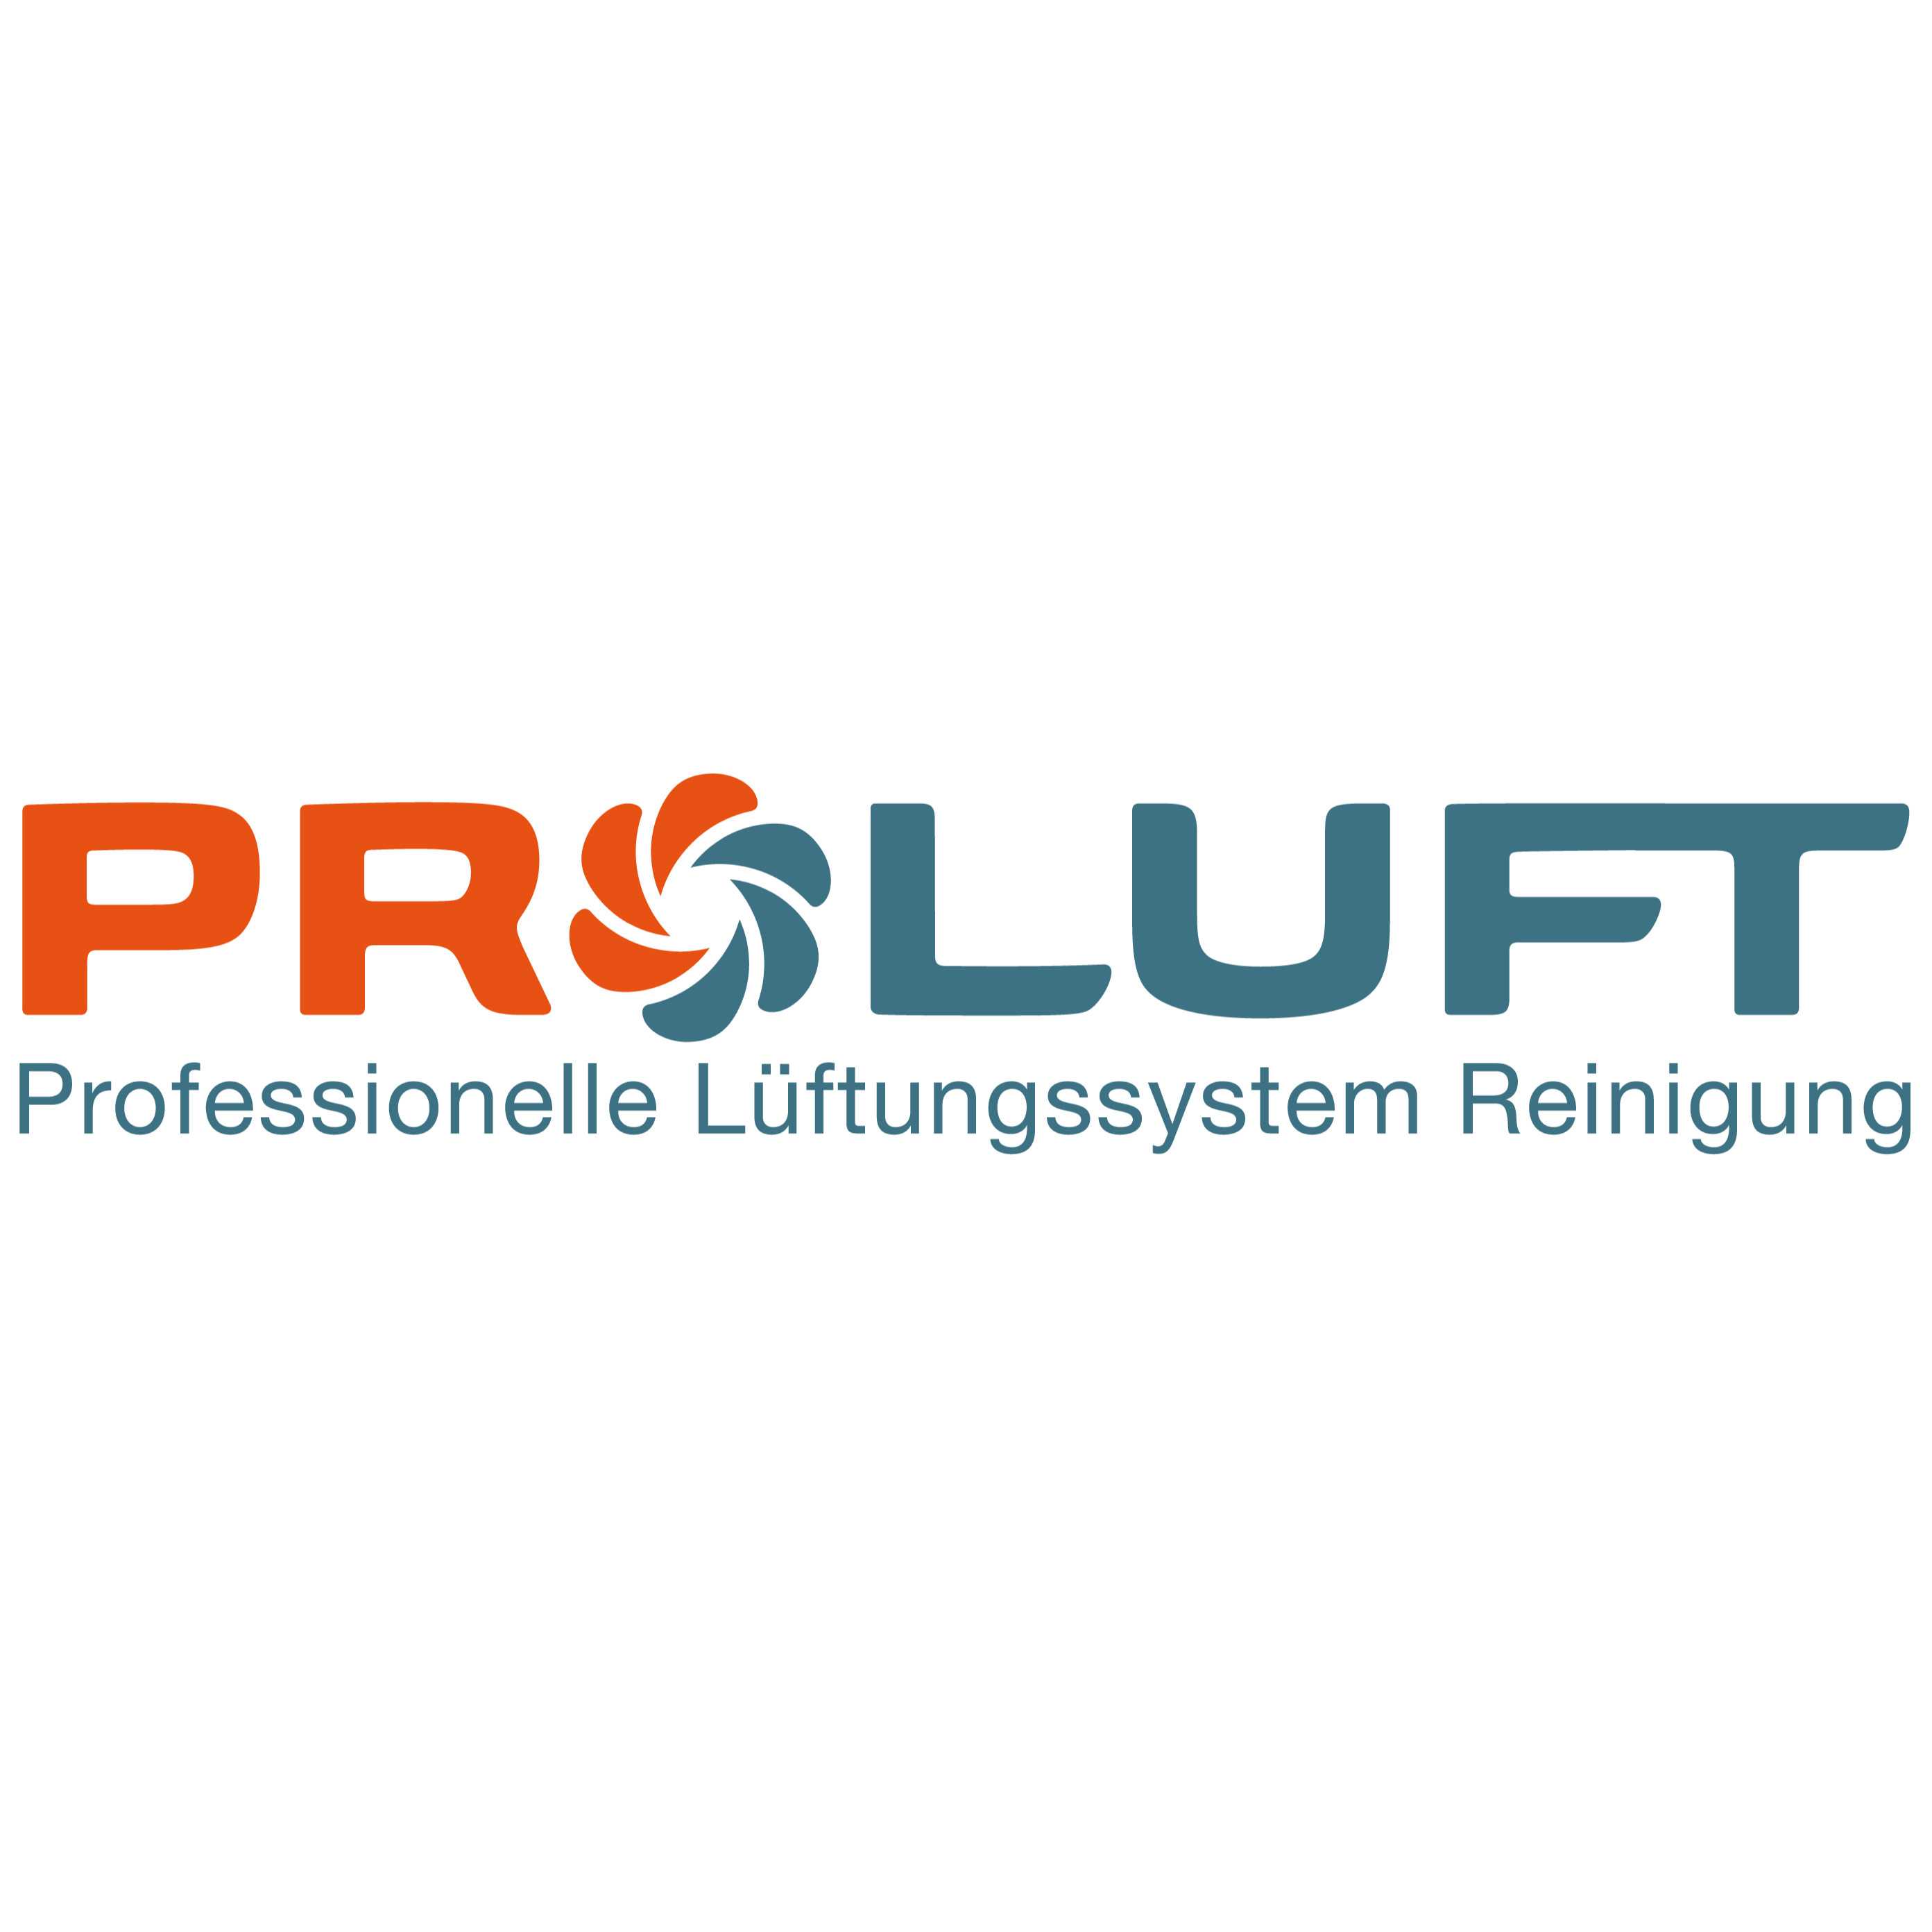 PROLUFT Professionelle Lüftungssystem Reinigungs GmbH Logo